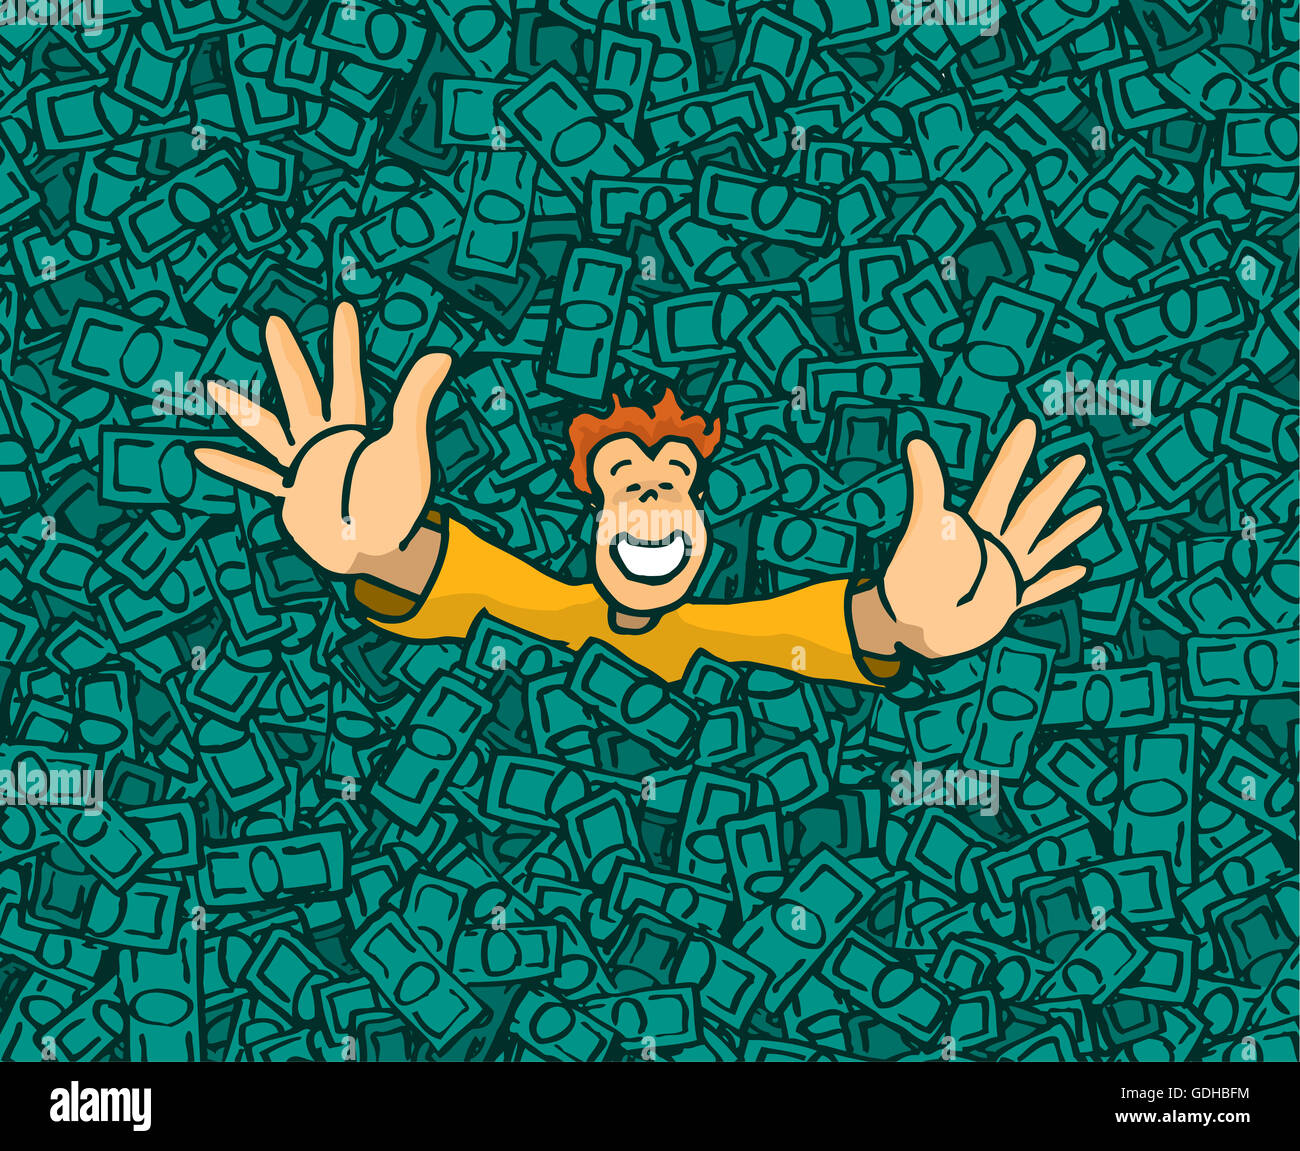 Cartoon illustration de l'heureux homme riche la main sur de l'argent extérieure Banque D'Images